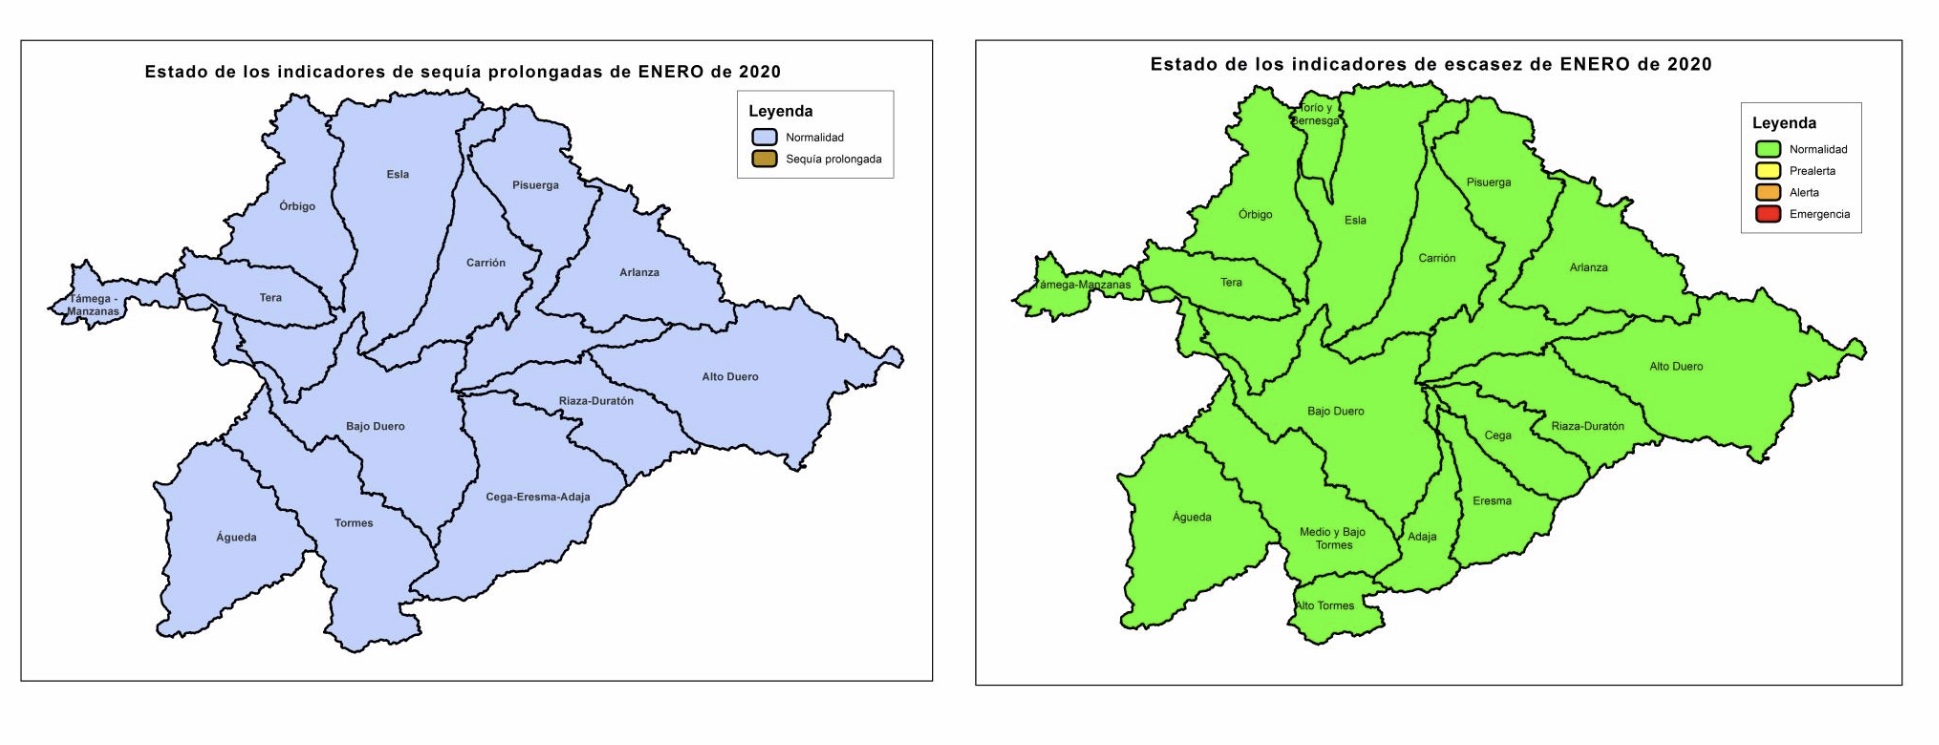 La CHD declara la salida de la situación excepcional por sequía extraordinaria en las zonas Cega, Adaja y Alto Tormes